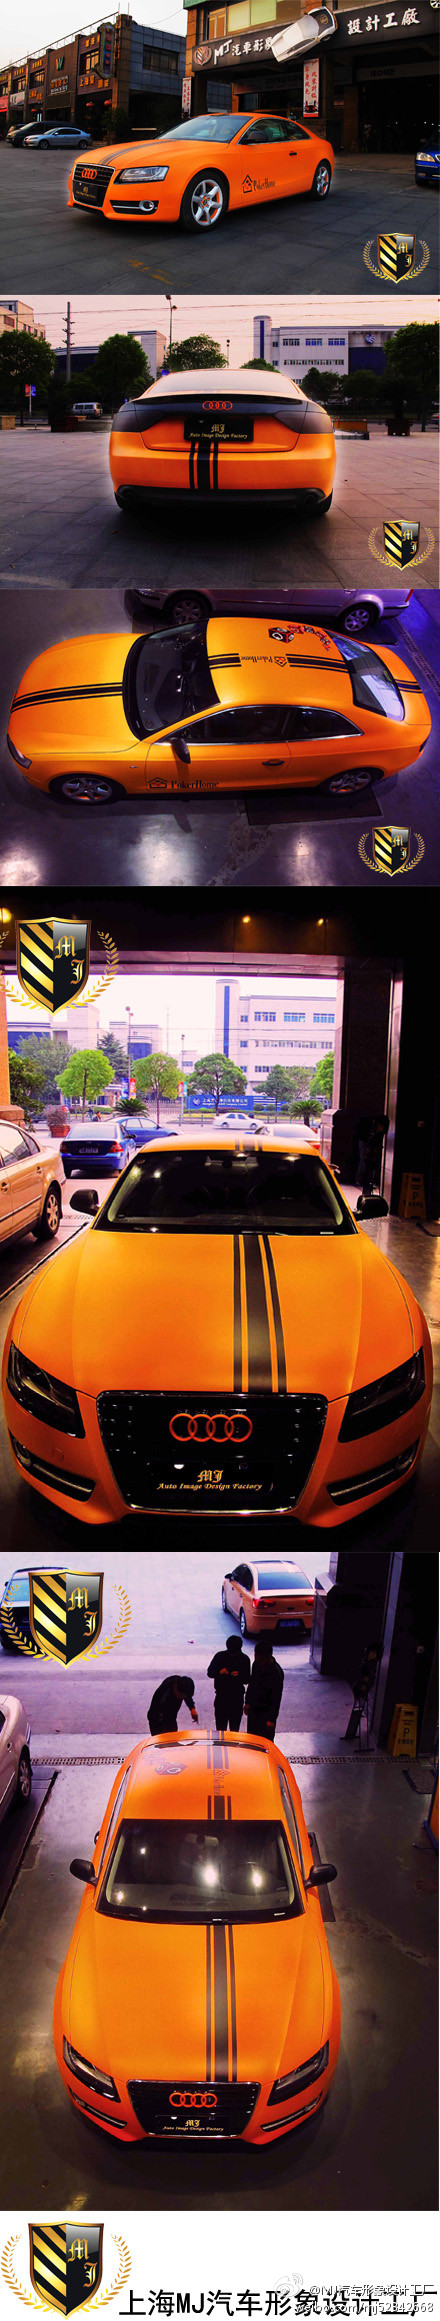 上海MJ汽车形象设计工厂------橙力十足亚光橙Poker Home 奥迪A5